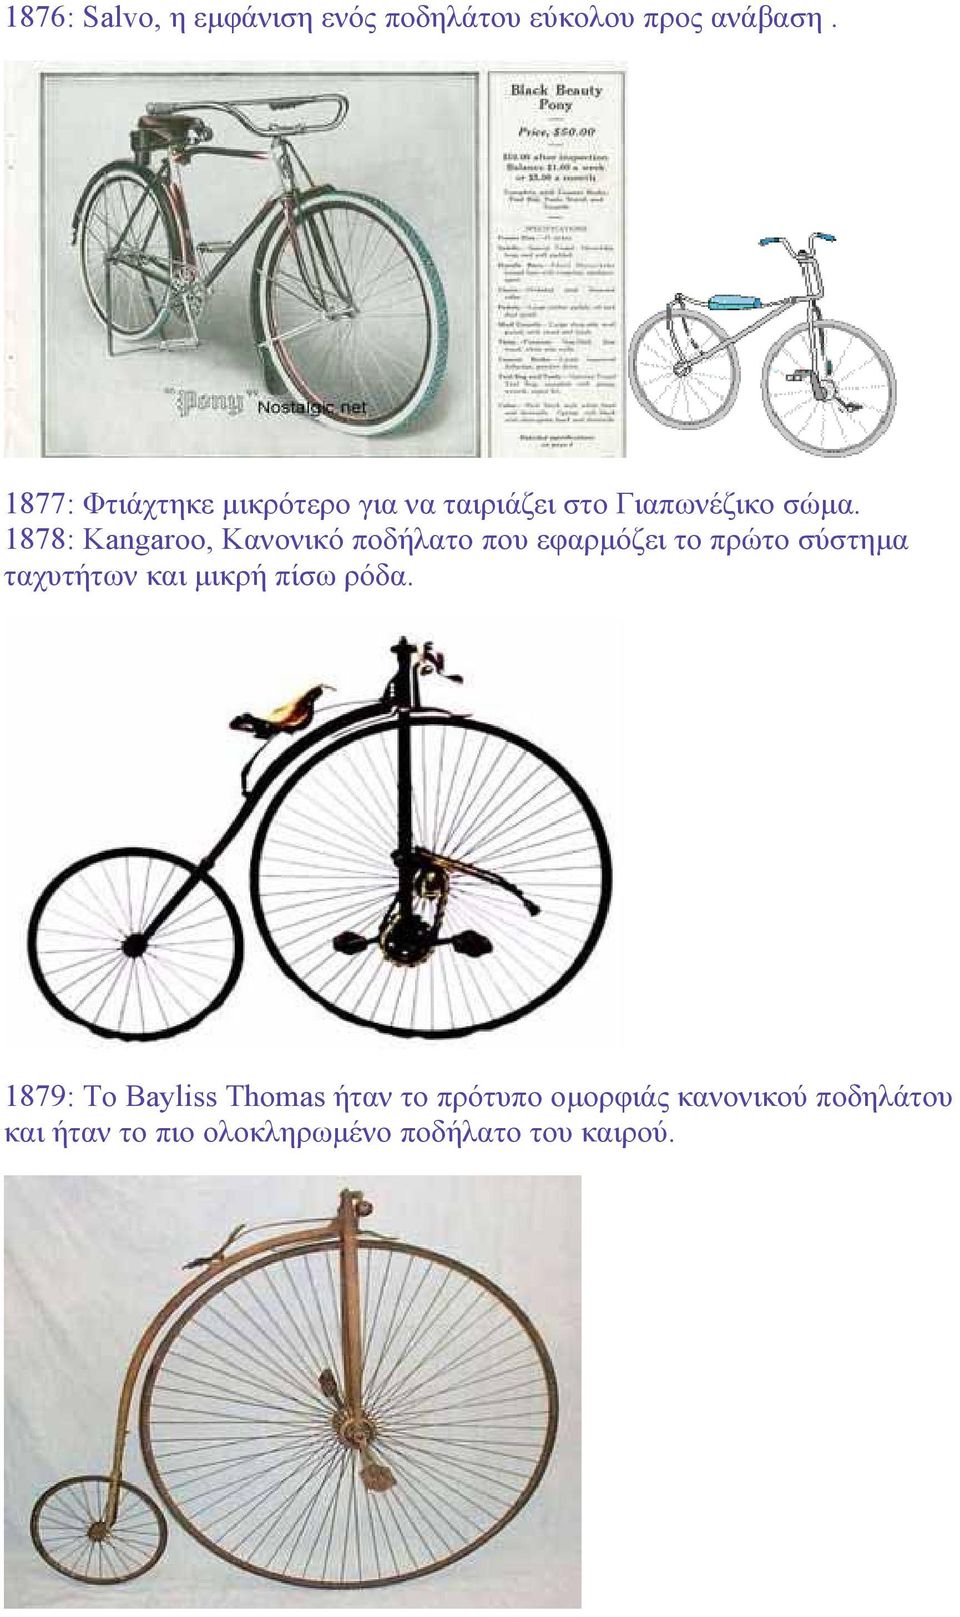 1878: Kangaroo, Κανονικό ποδήλατο που εφαρµόζει το πρώτο σύστηµα ταχυτήτων και µικρή